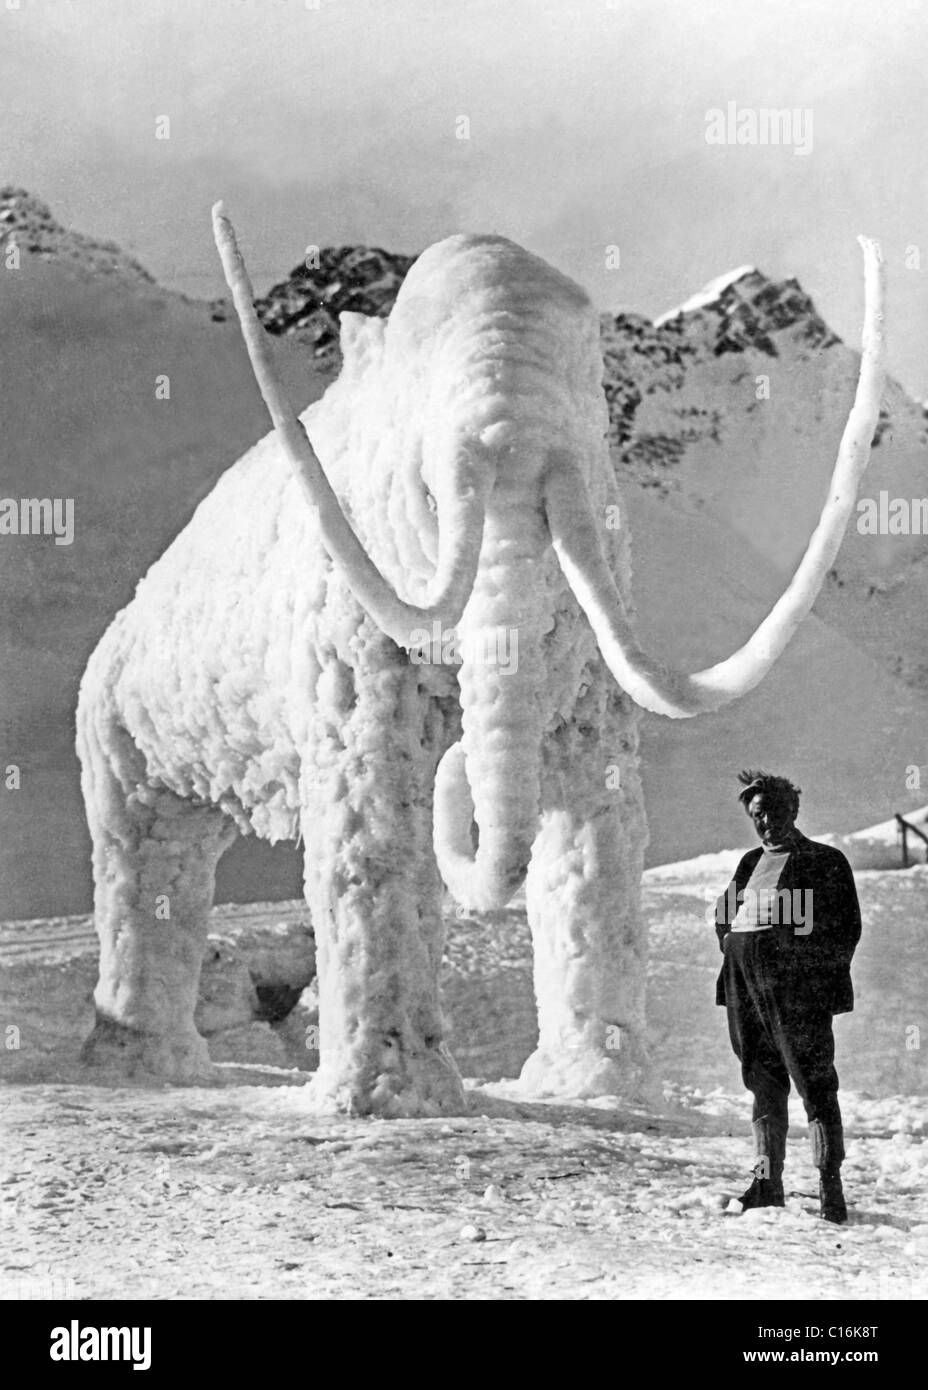 Photographie historique de mammouth, de glace et de neige Banque D'Images